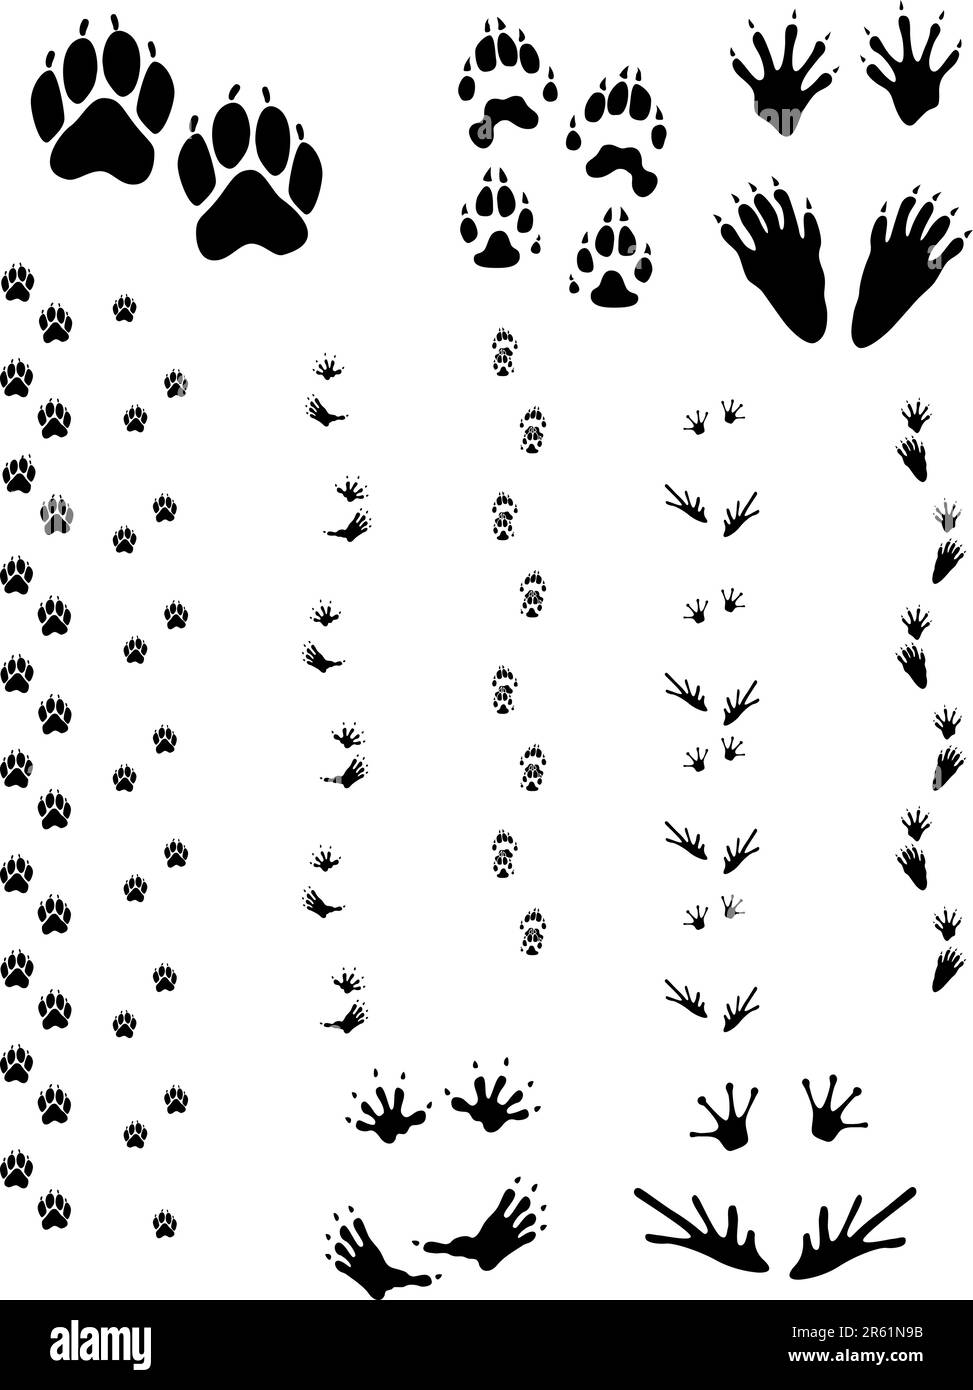 Pfotenabdrücke und Spuren von fünf verschiedenen Tieren. Obere Reihe von links nach rechts: Hund, Wolverine, Waschbär. Untere Reihe: Opossum, Frosch. Vektoren sind alle sauber... Stock Vektor